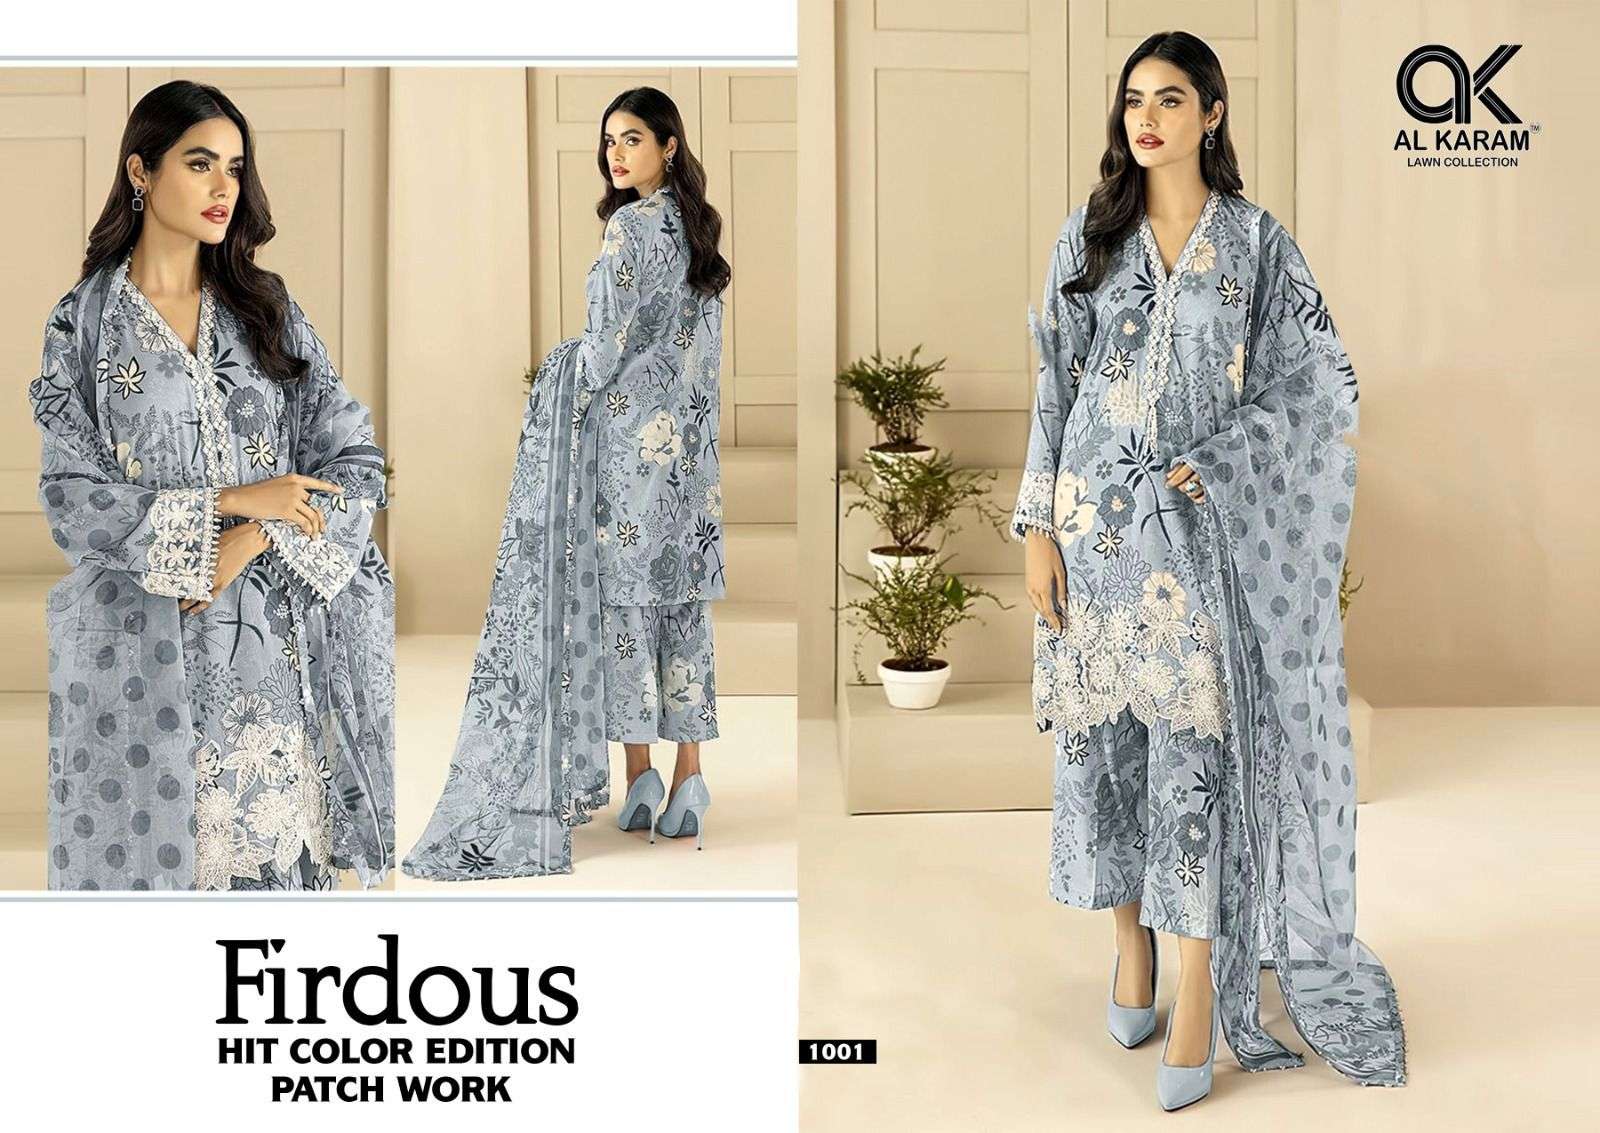 Al karam firdous hit colour edition 1001-1004 series pakistani wear cotton suits collection wholesale surat